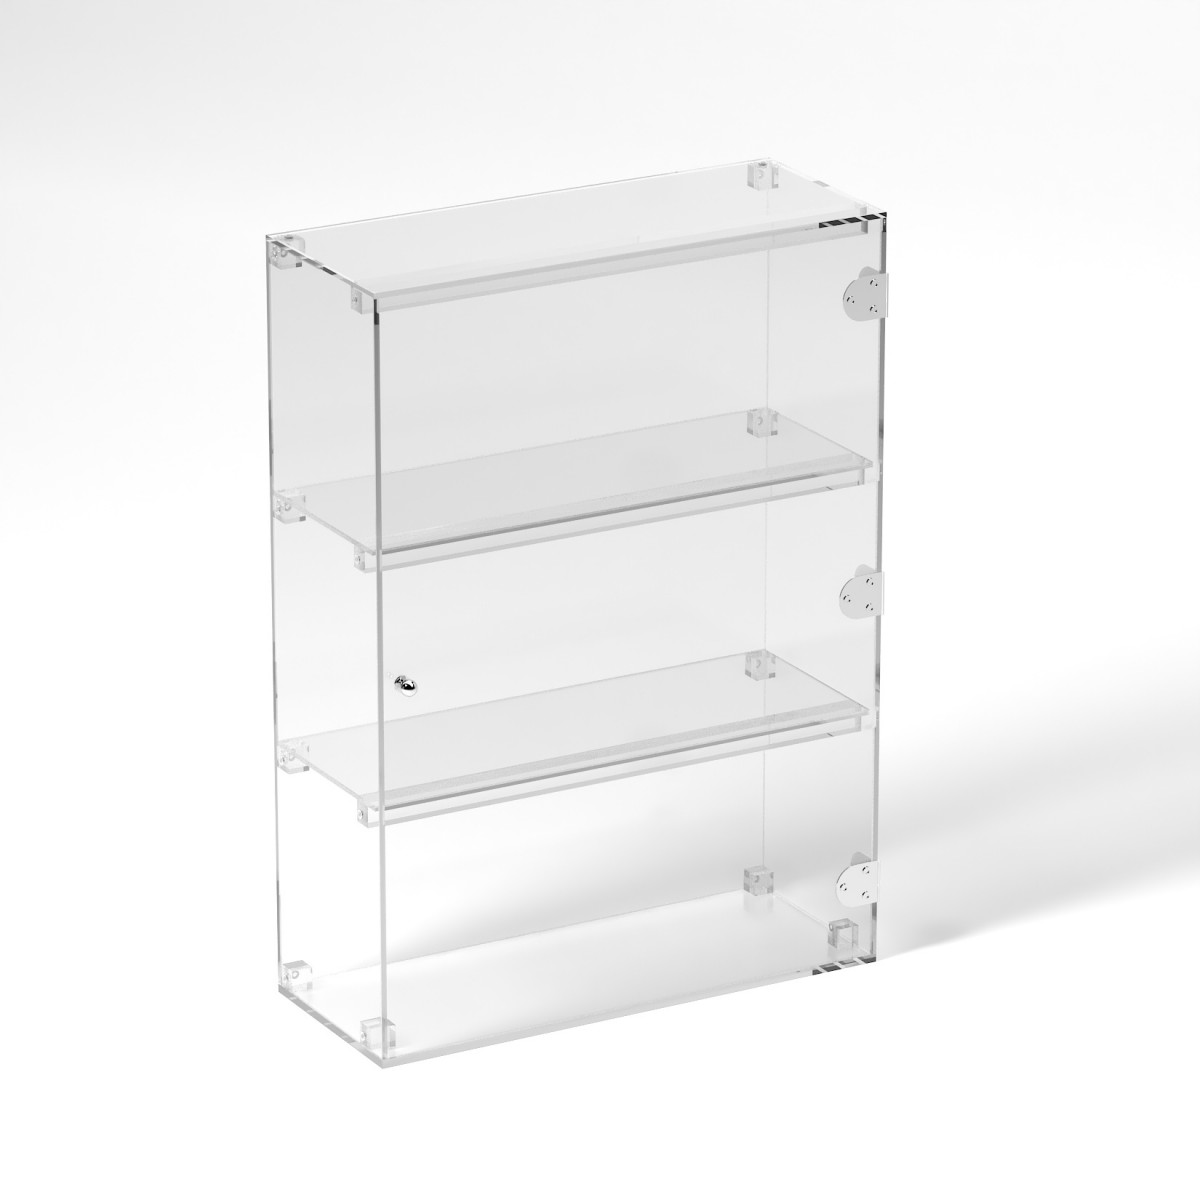 E-832 VET - Ampia vetrina espositiva in plexiglass trasparente a 3 ripiani - Misure: 50 x 20 x h70 cm